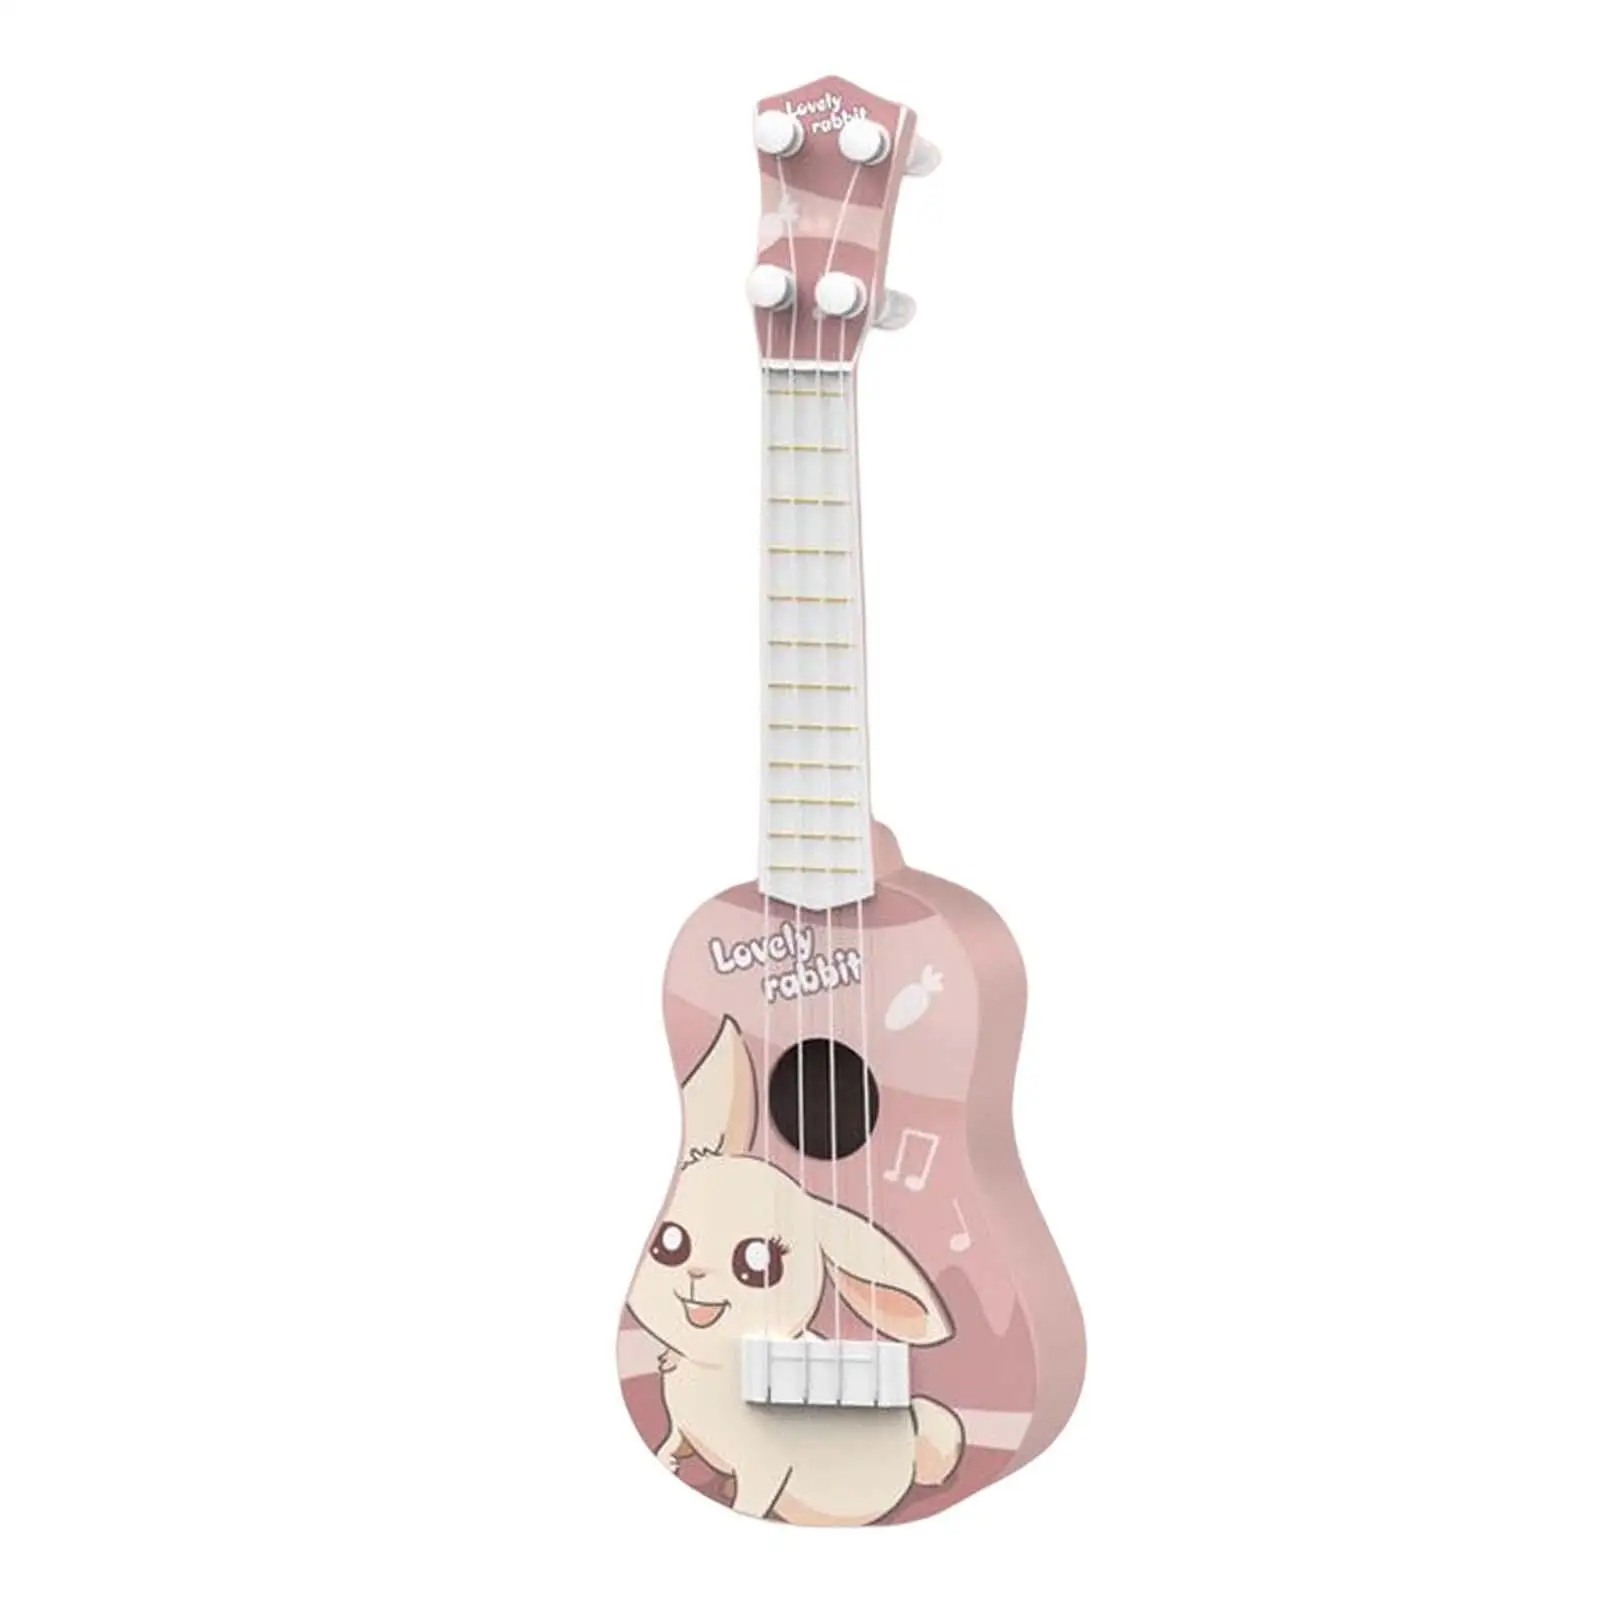 Ukulele Toys Musical Instrument Toy Mini Ukulele for Children Gifts